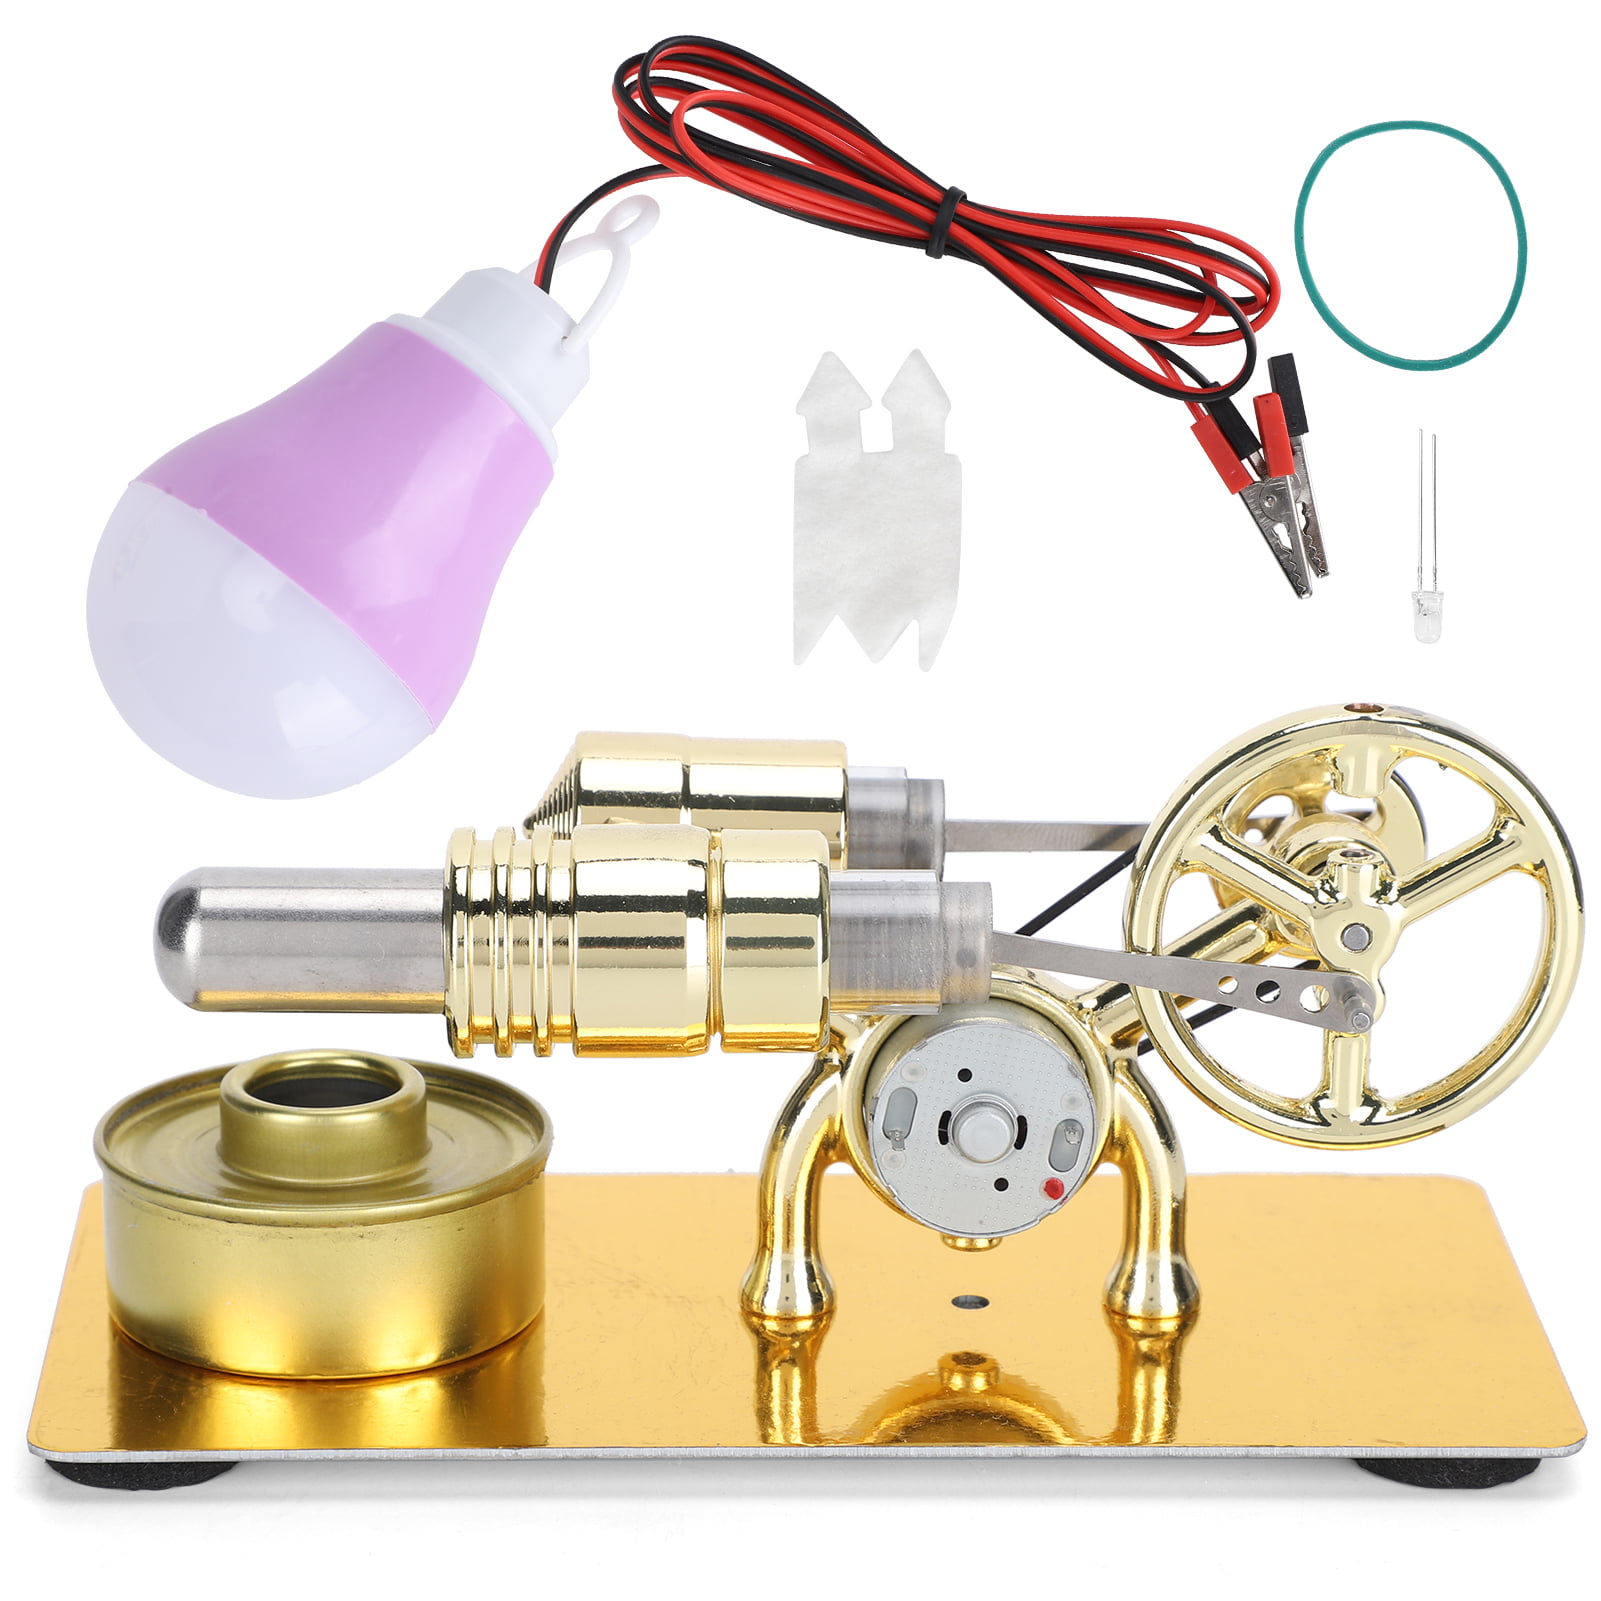 Physique moteur thermique de l'électricité Générateur Stirlingmotor modèles avec externe 